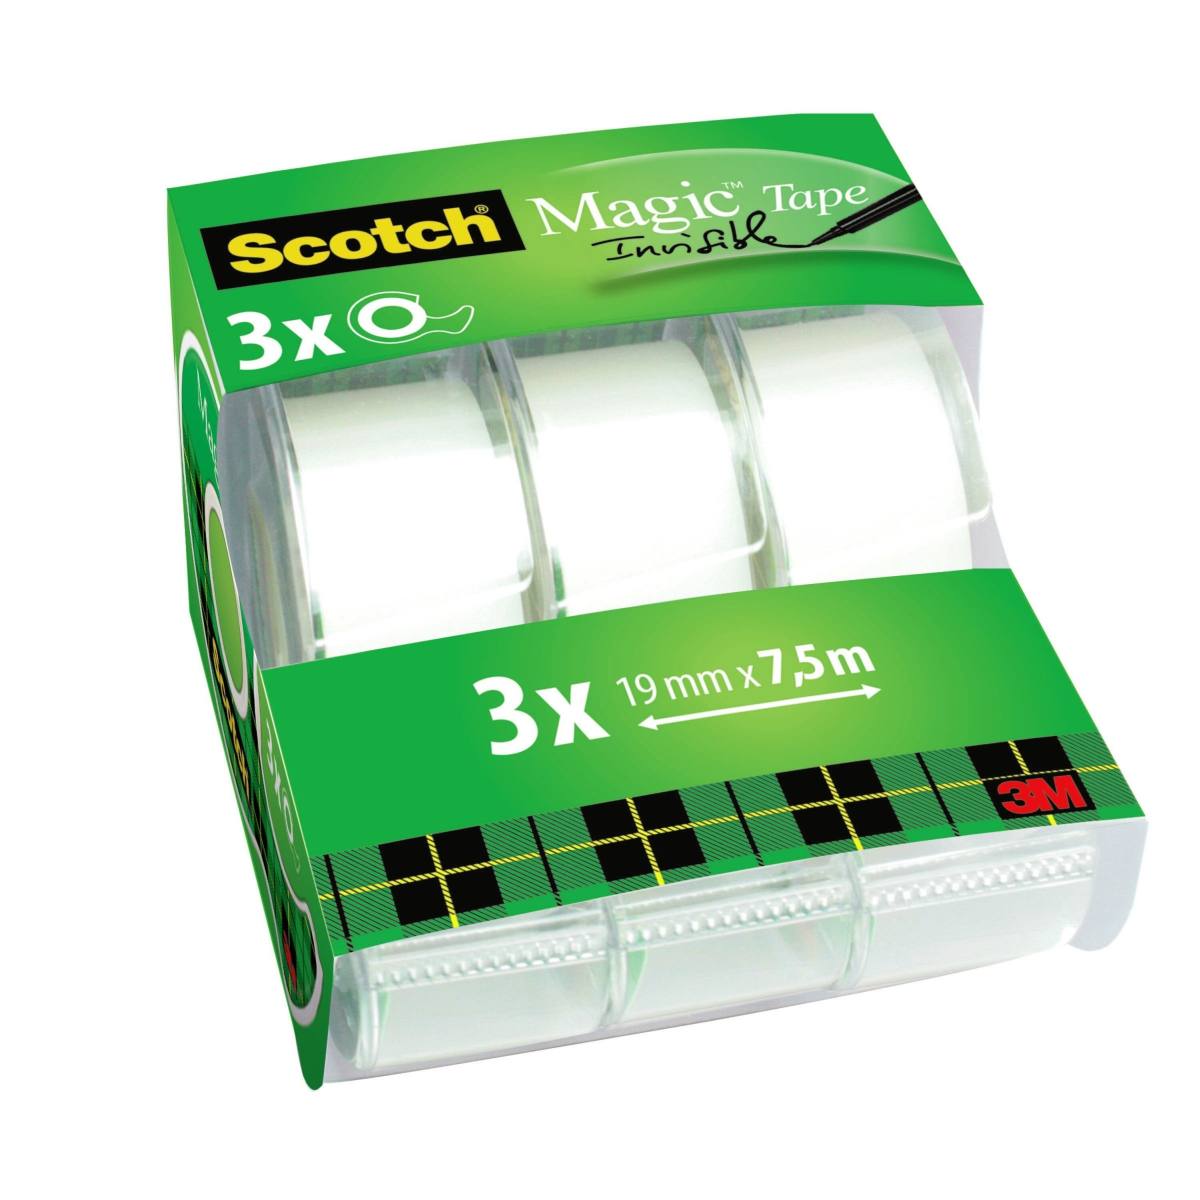 3M Scotch Magic Tape Caddy Pack, 3 rollen in handdispensers 19 mm x 7,5 m